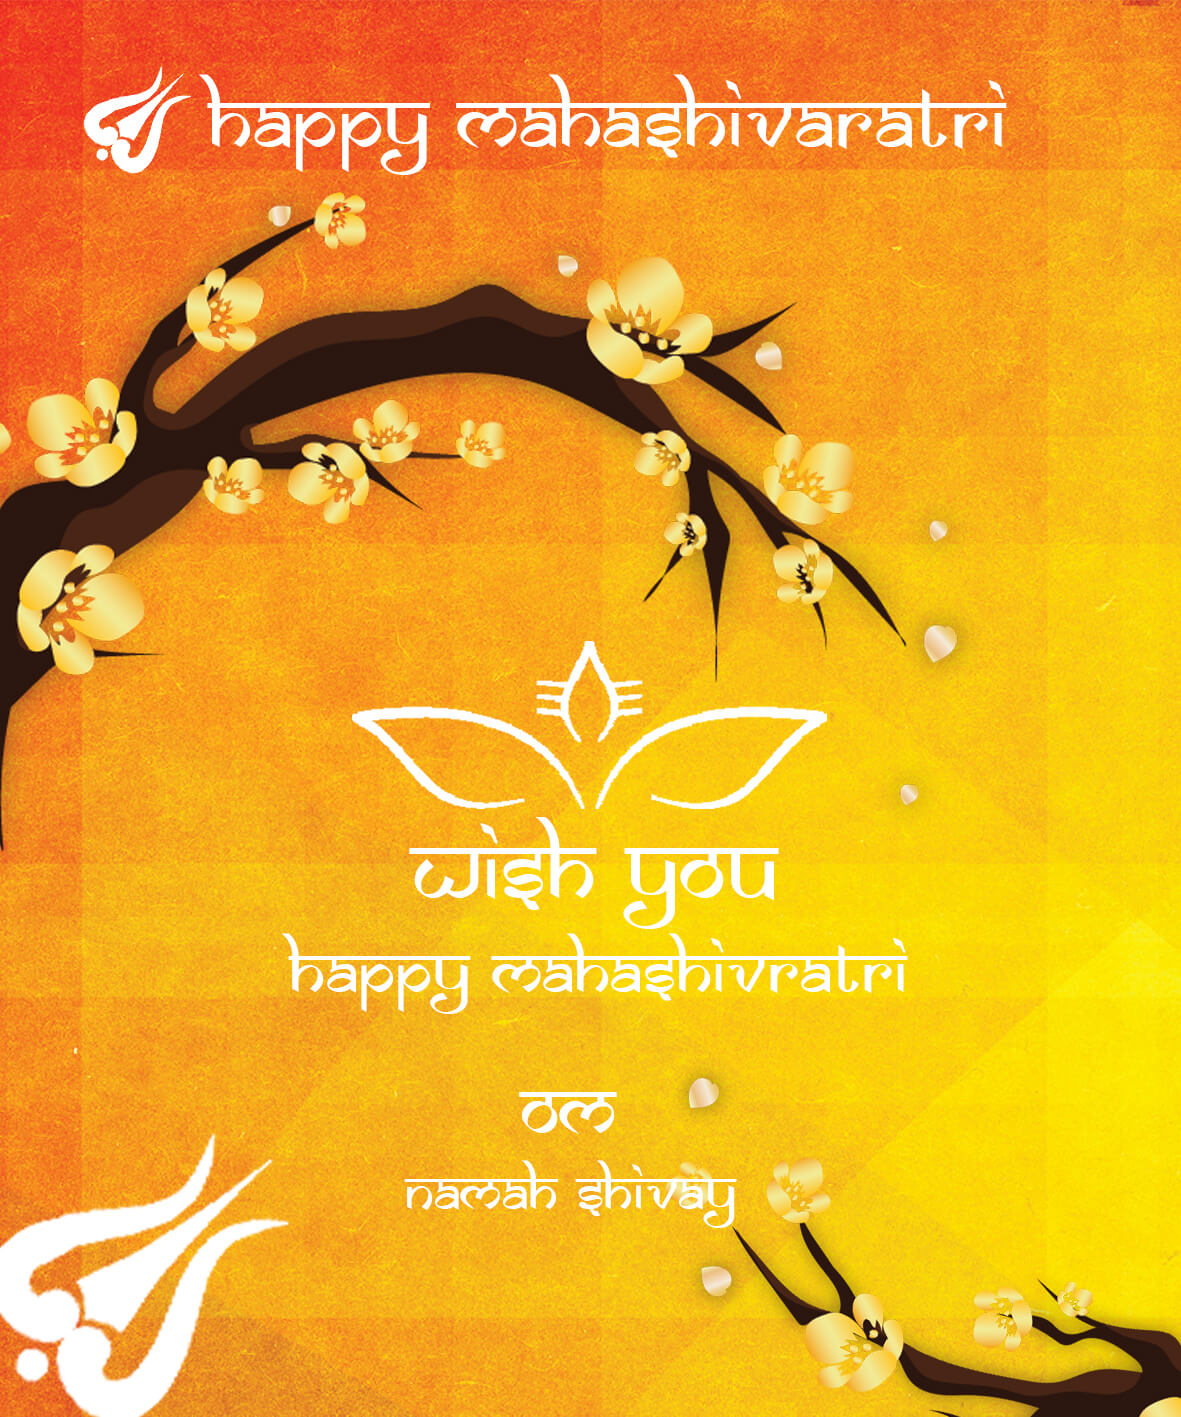 Mahashivratri_18 | eGreetings Portal